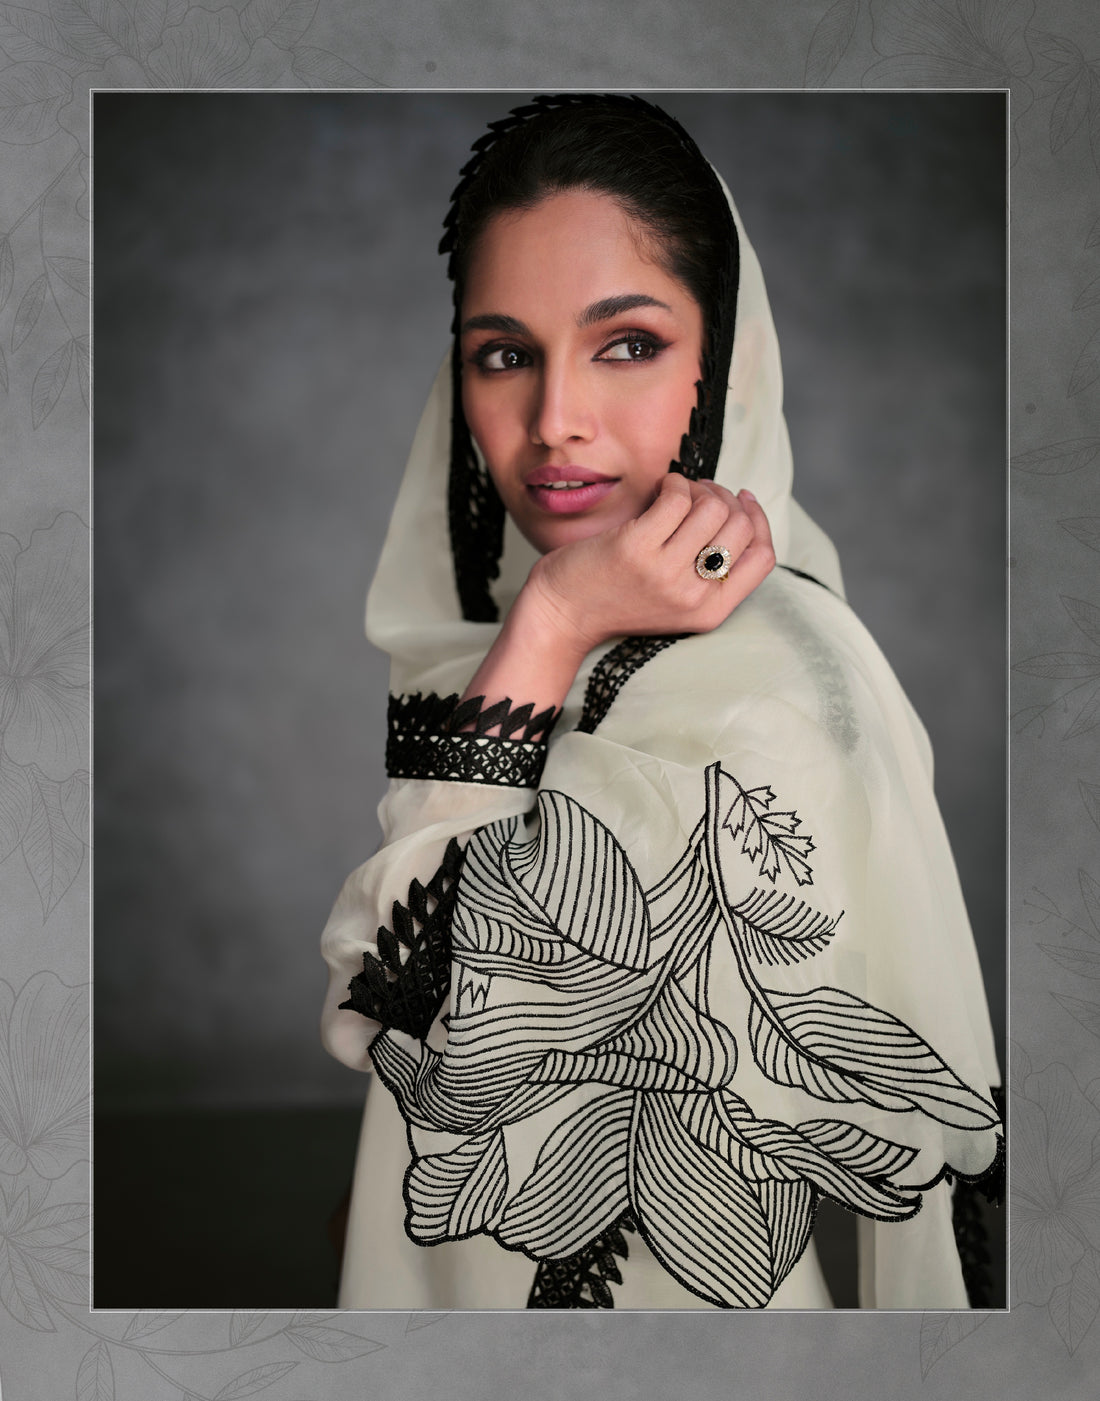 Beautiful Designer Occasion Wear Latest Pure Organza Silk Salwar Suit